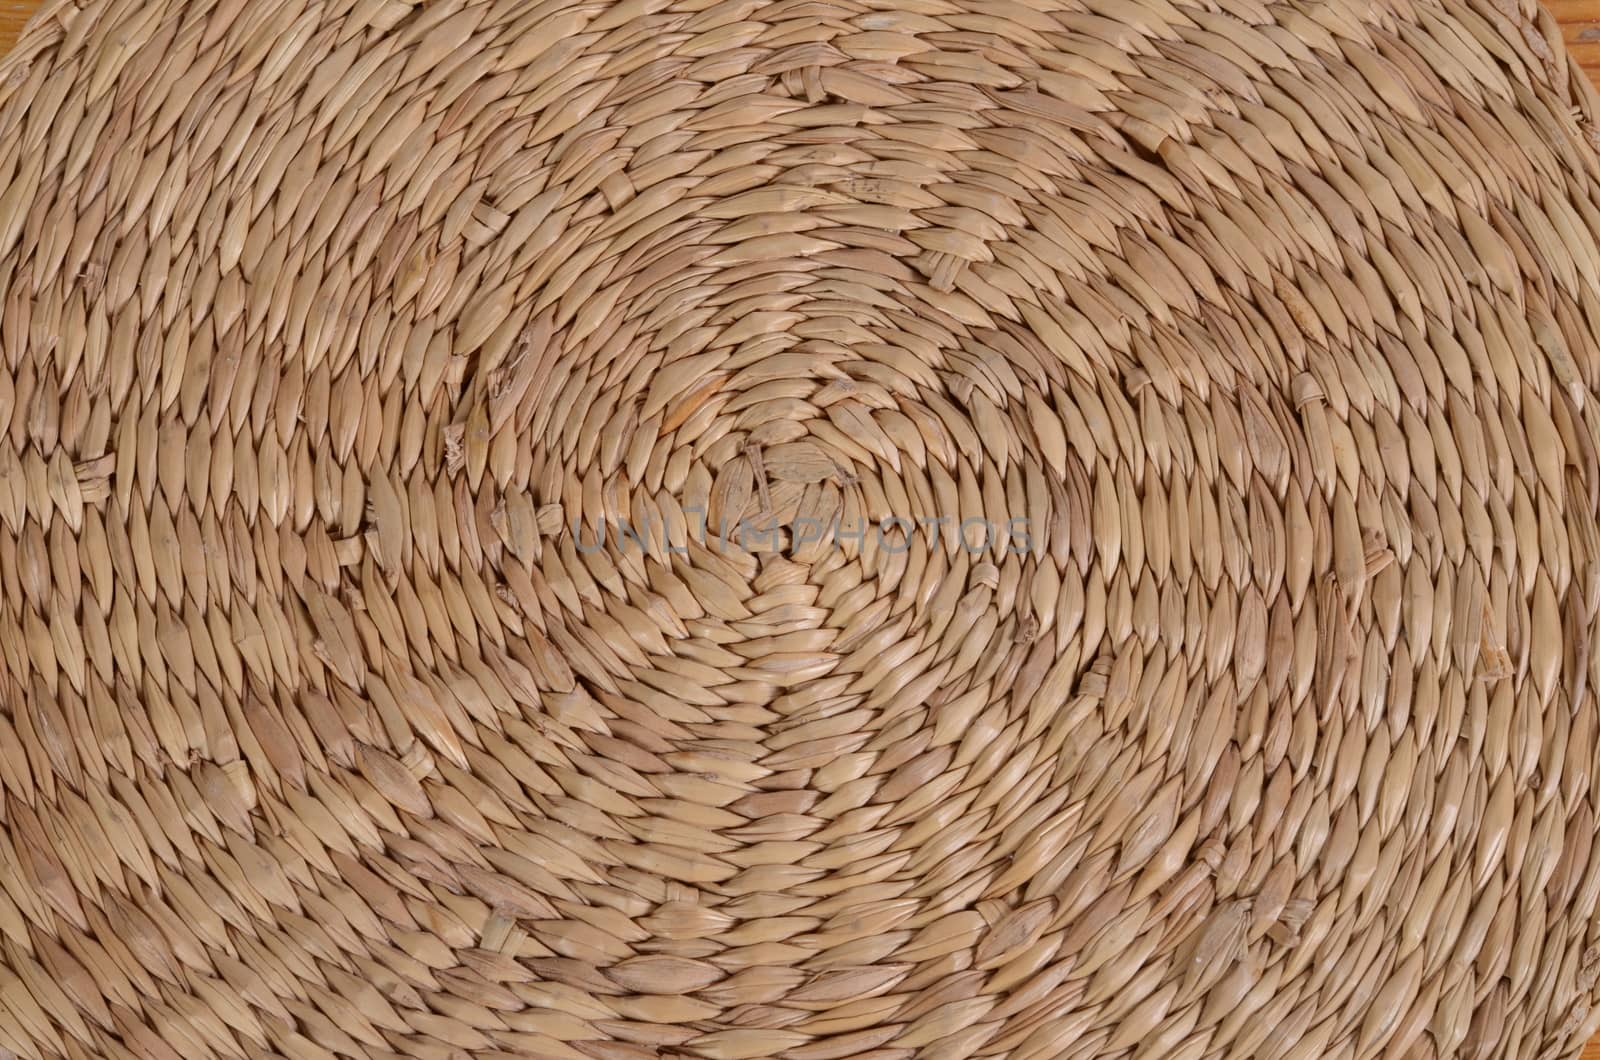 straw basket detail by sarkao